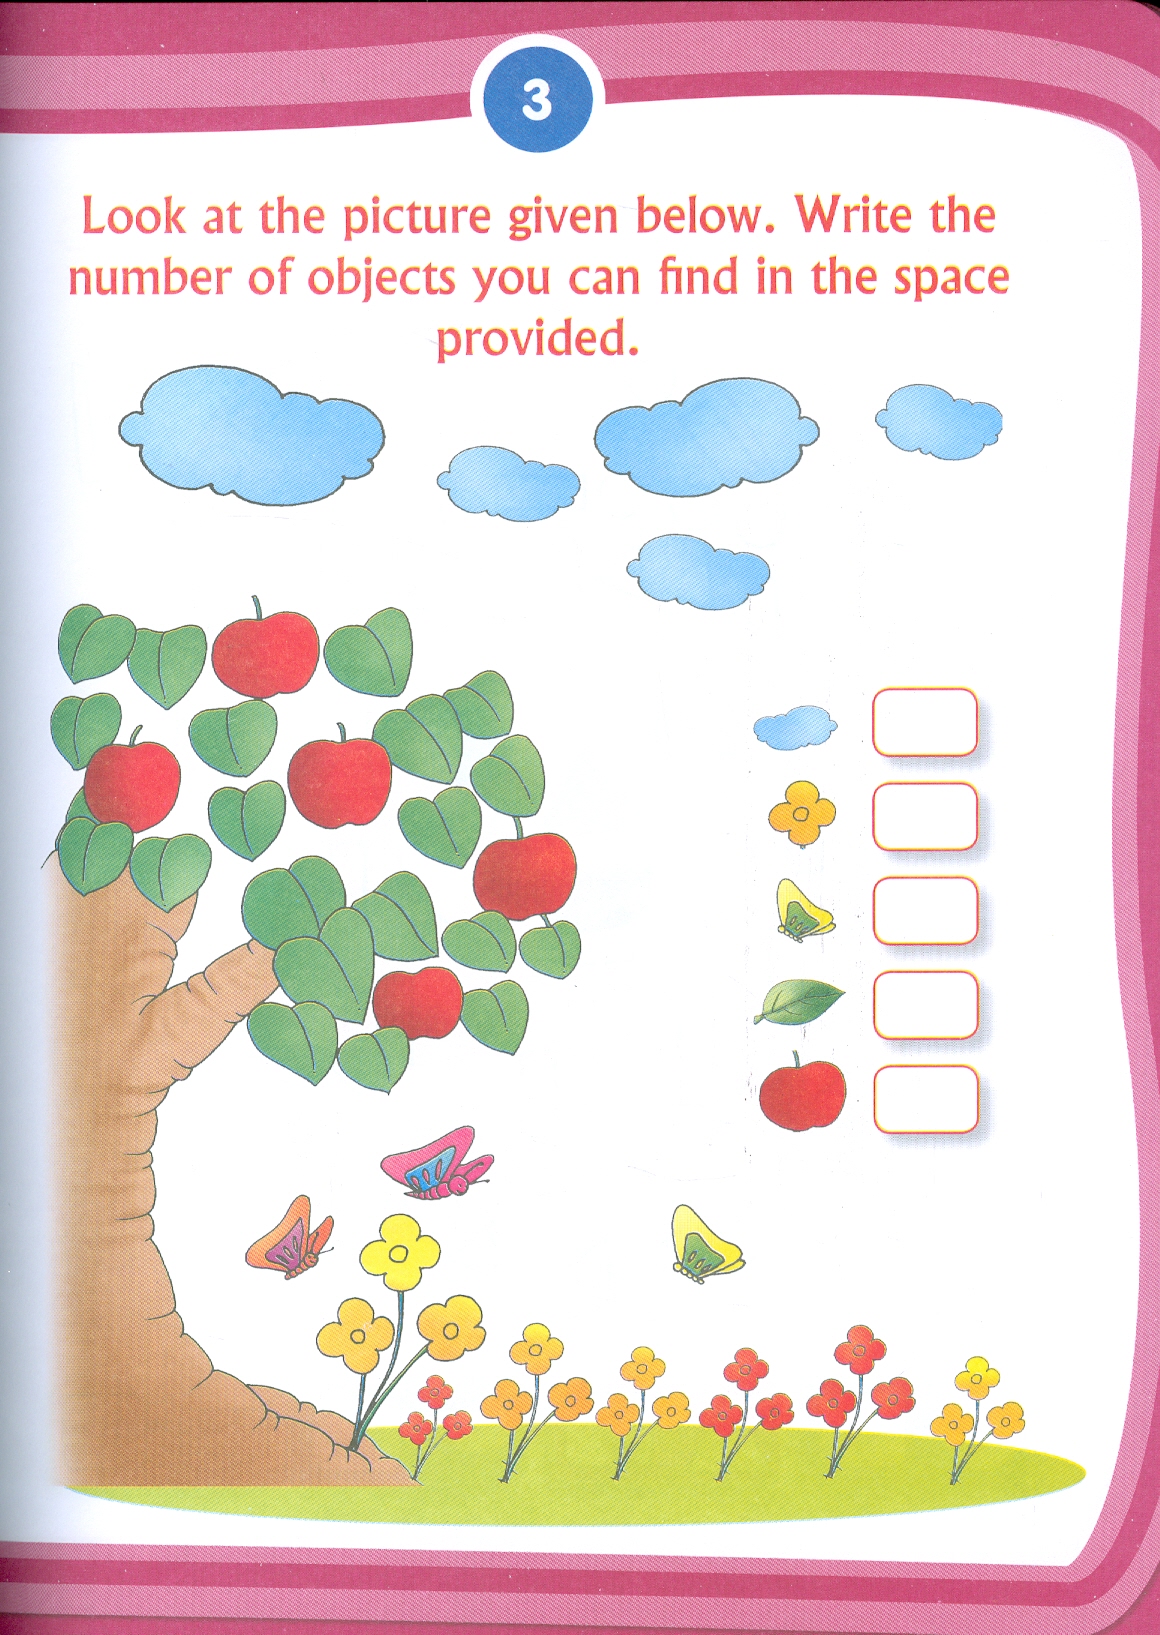 Kid's 3rd Activity Book Maths - Age 5+ (Các Hoạt Động Toán Học Cho Trẻ 5+)